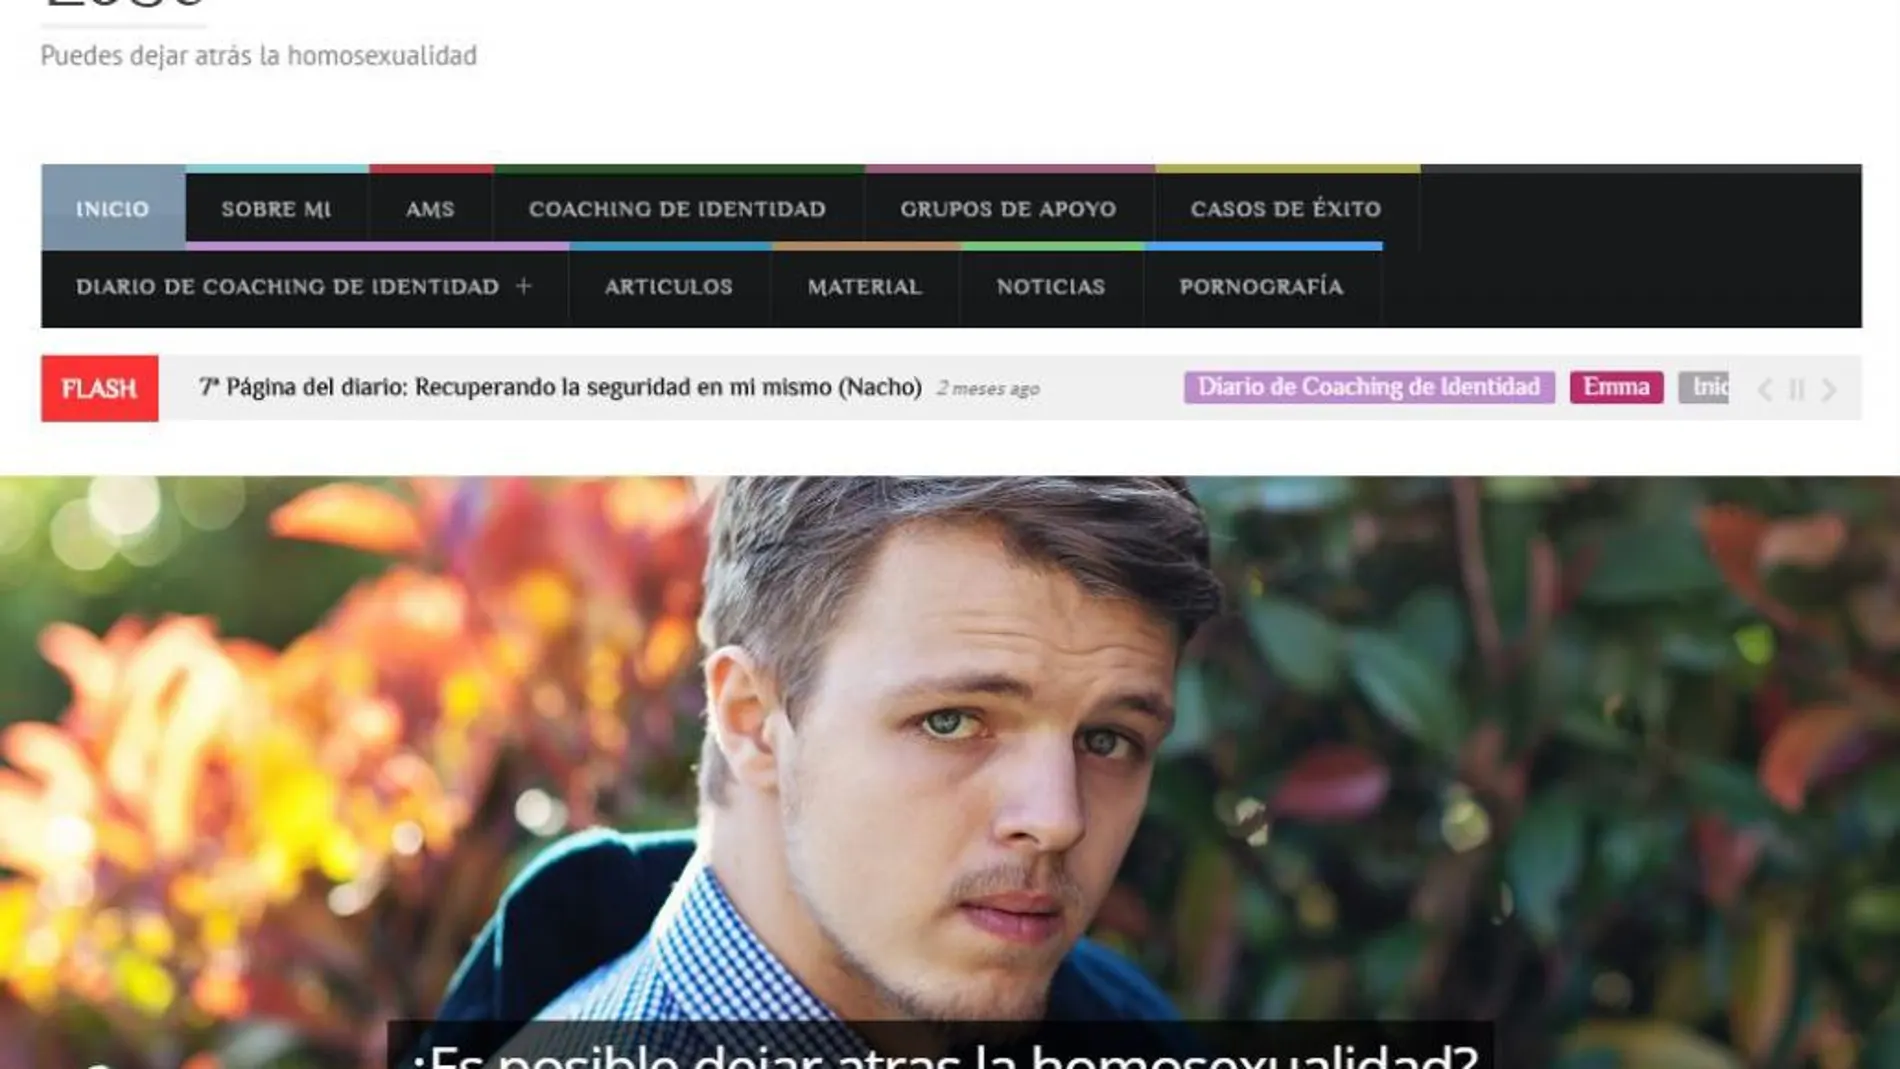 Página de inicio de la web que ofrece curar la homosexualidad